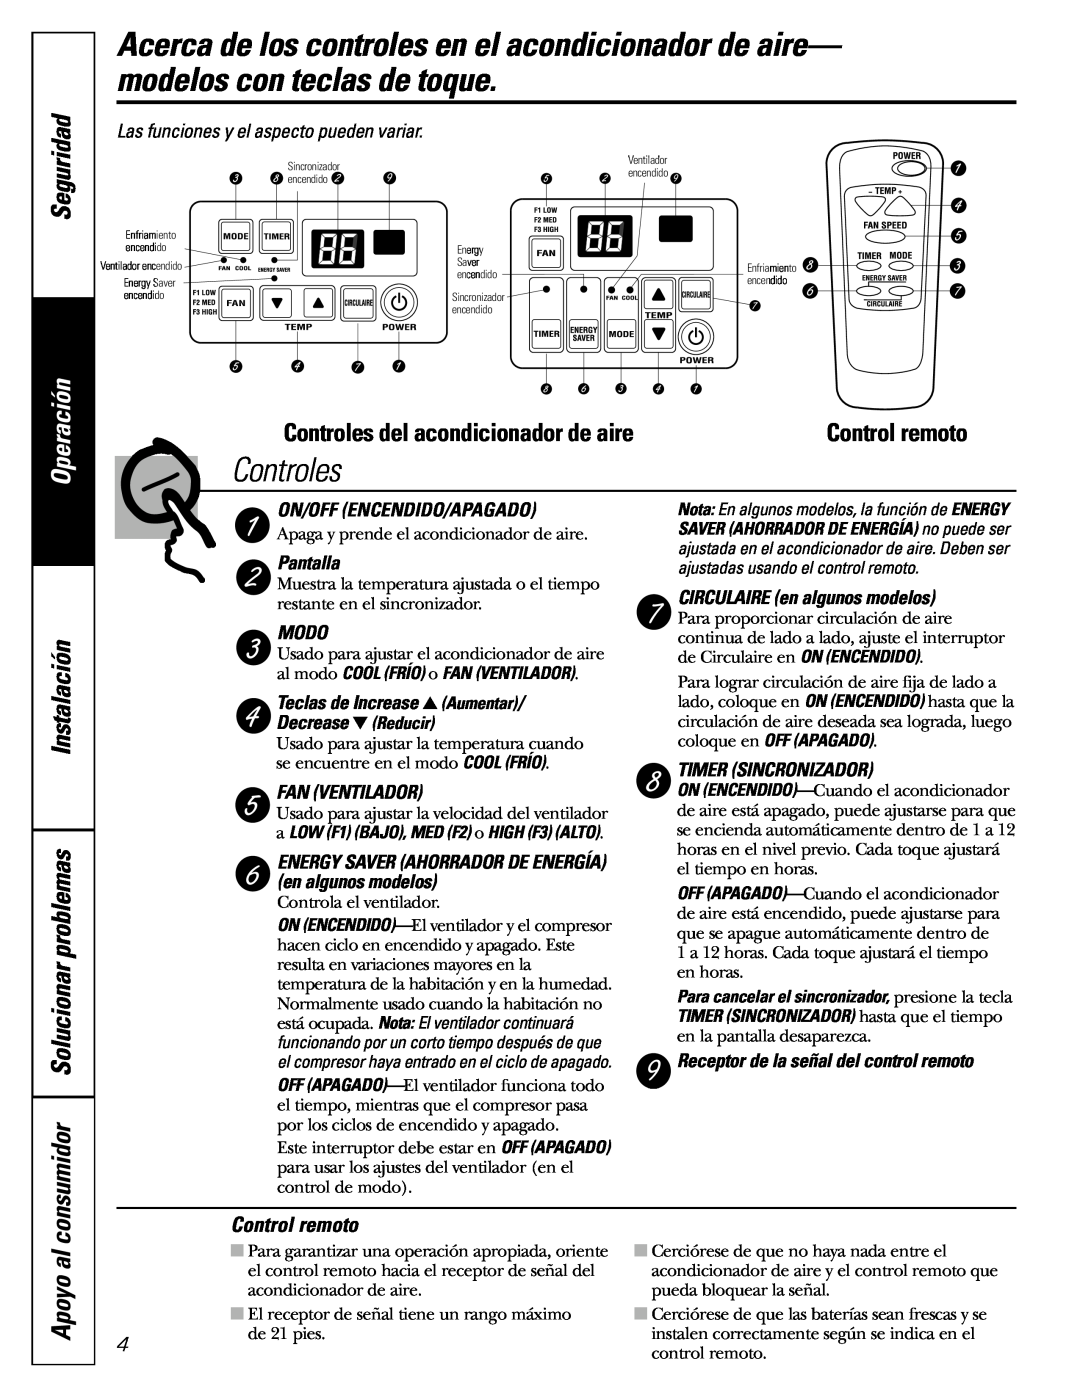 GE AGF10 Seguridad, Operación, Instalación consumidor Solucionar problemas, Apoyo al, Controles del acondicionador de aire 